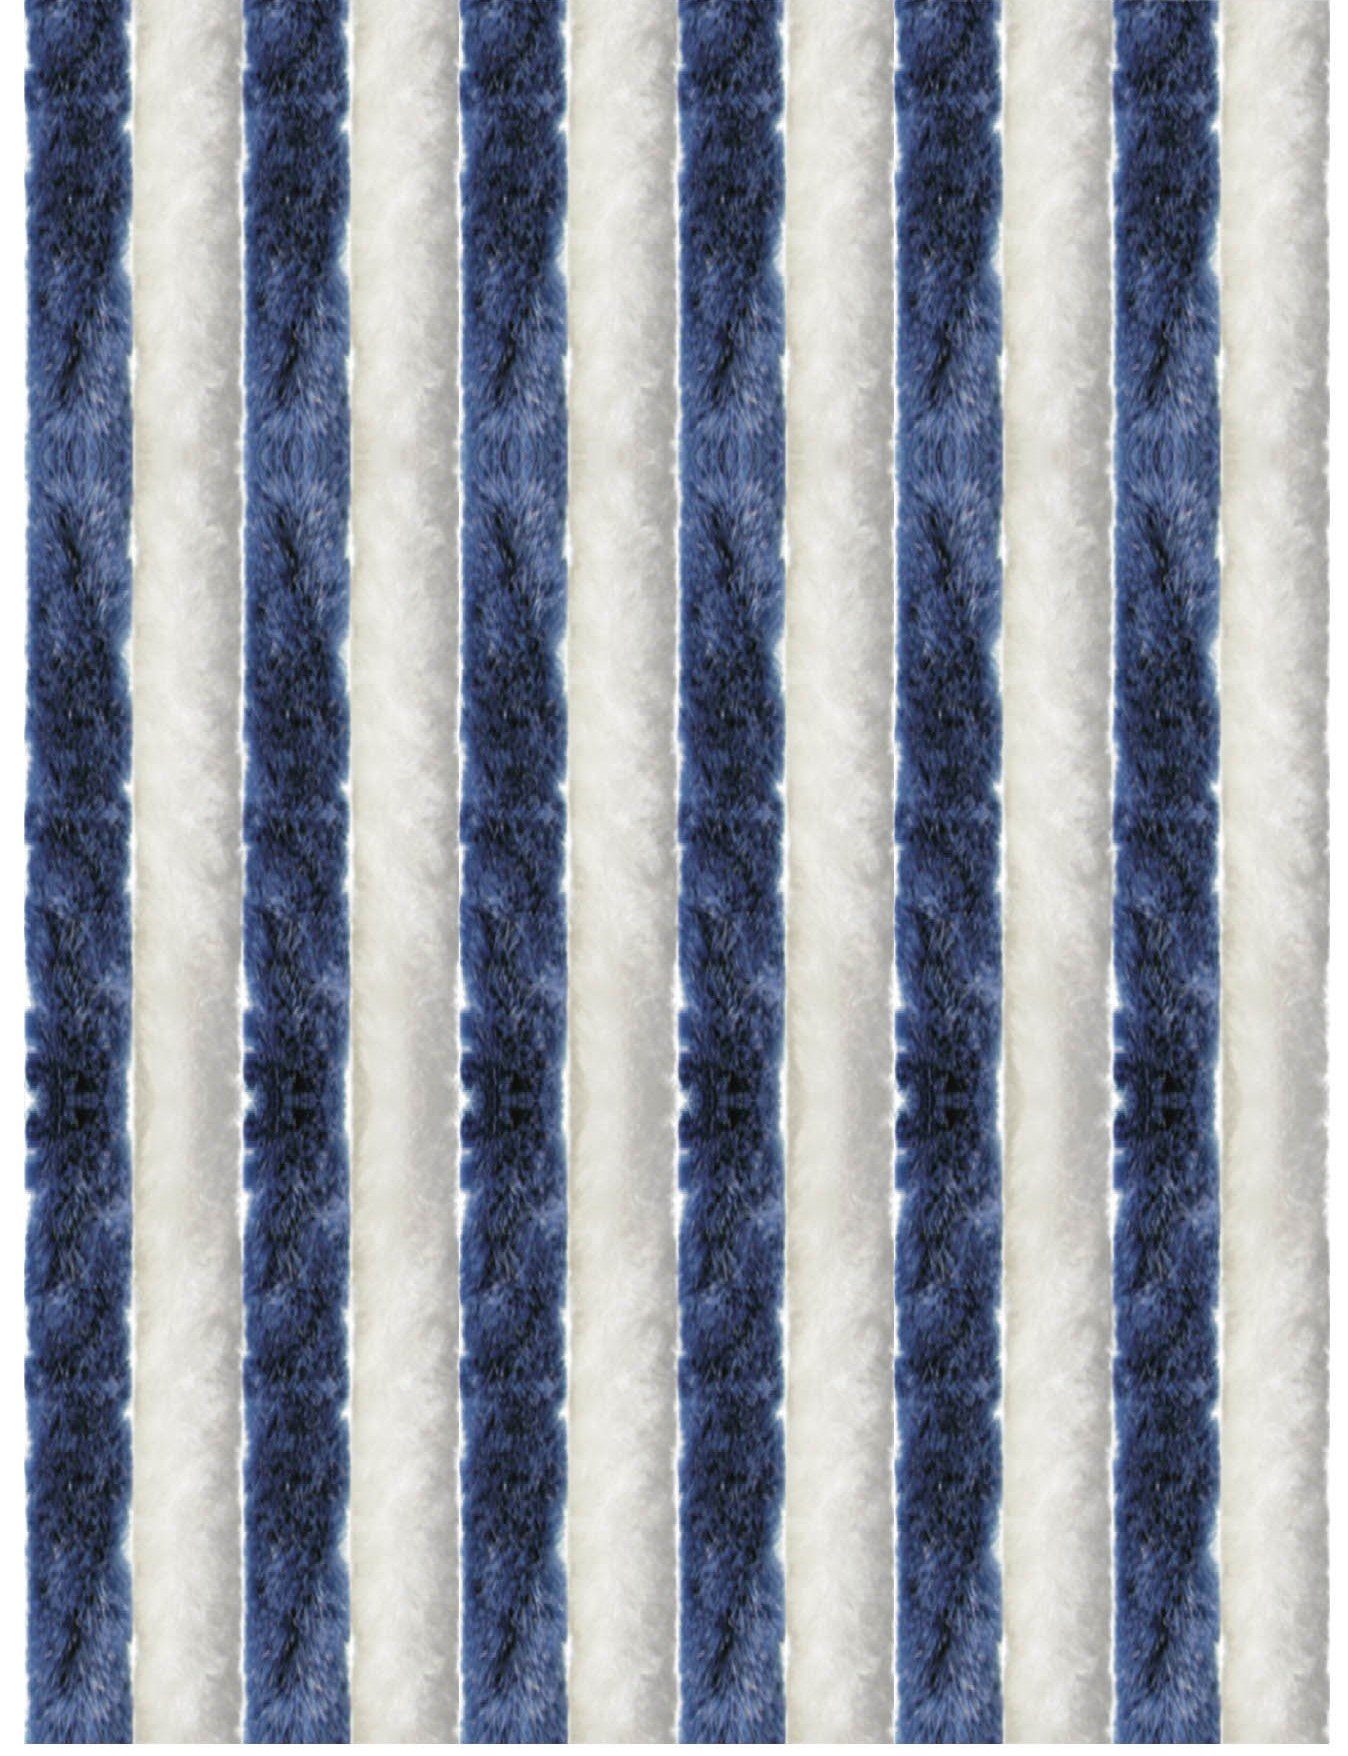 160x185 St), (1 Flauschvorhang - dunkelblau Flauschi, cm Arsvita, Farben Türvorhang Unistreifen Ösen weiß, in viele